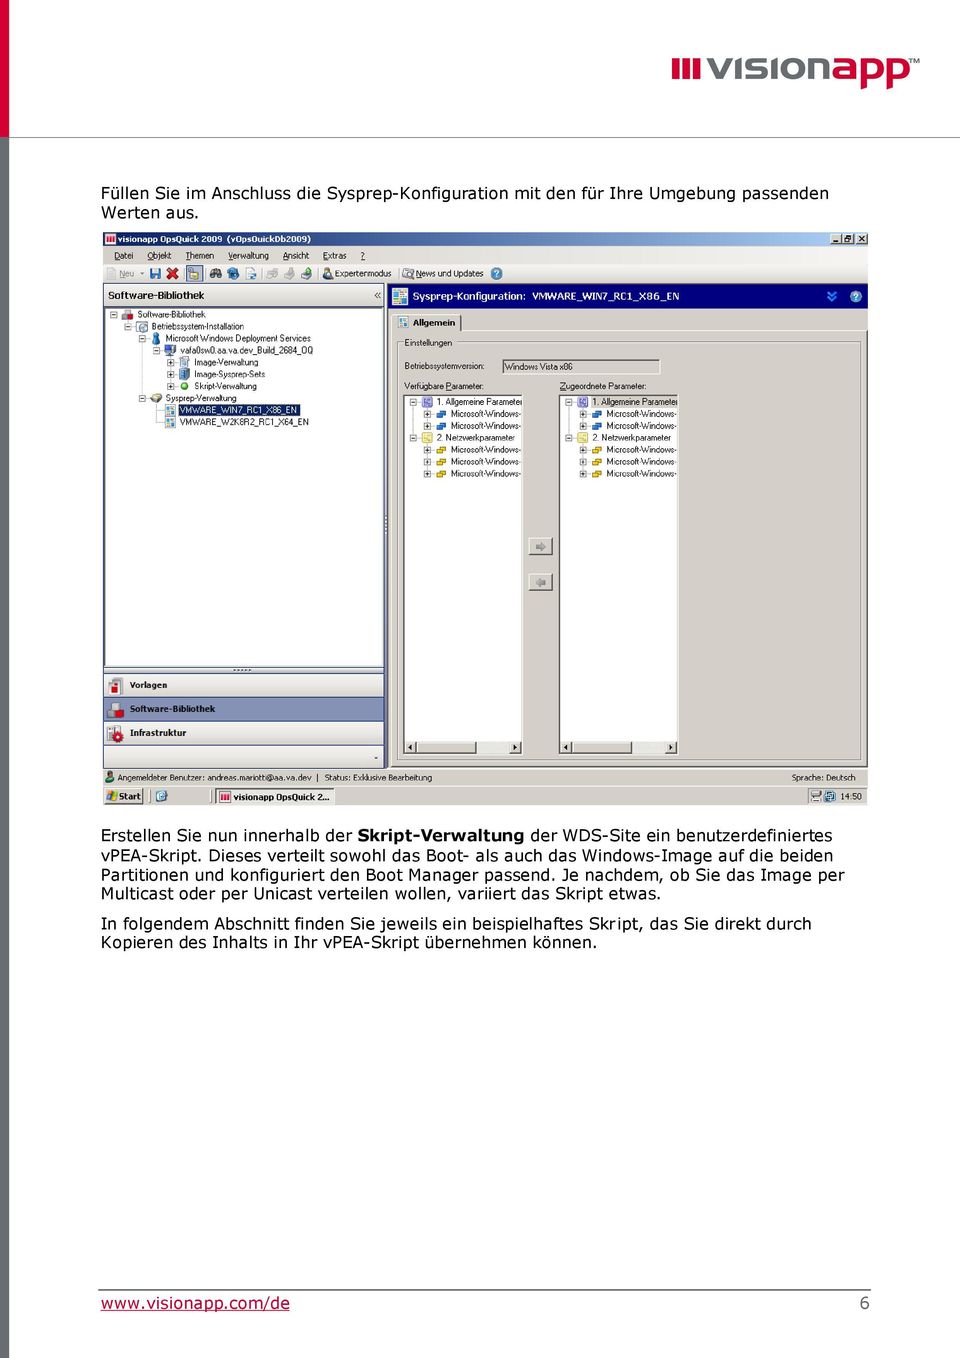 Dieses verteilt sowohl das Boot- als auch das Windows-Image auf die beiden Partitionen und konfiguriert den Boot Manager passend.